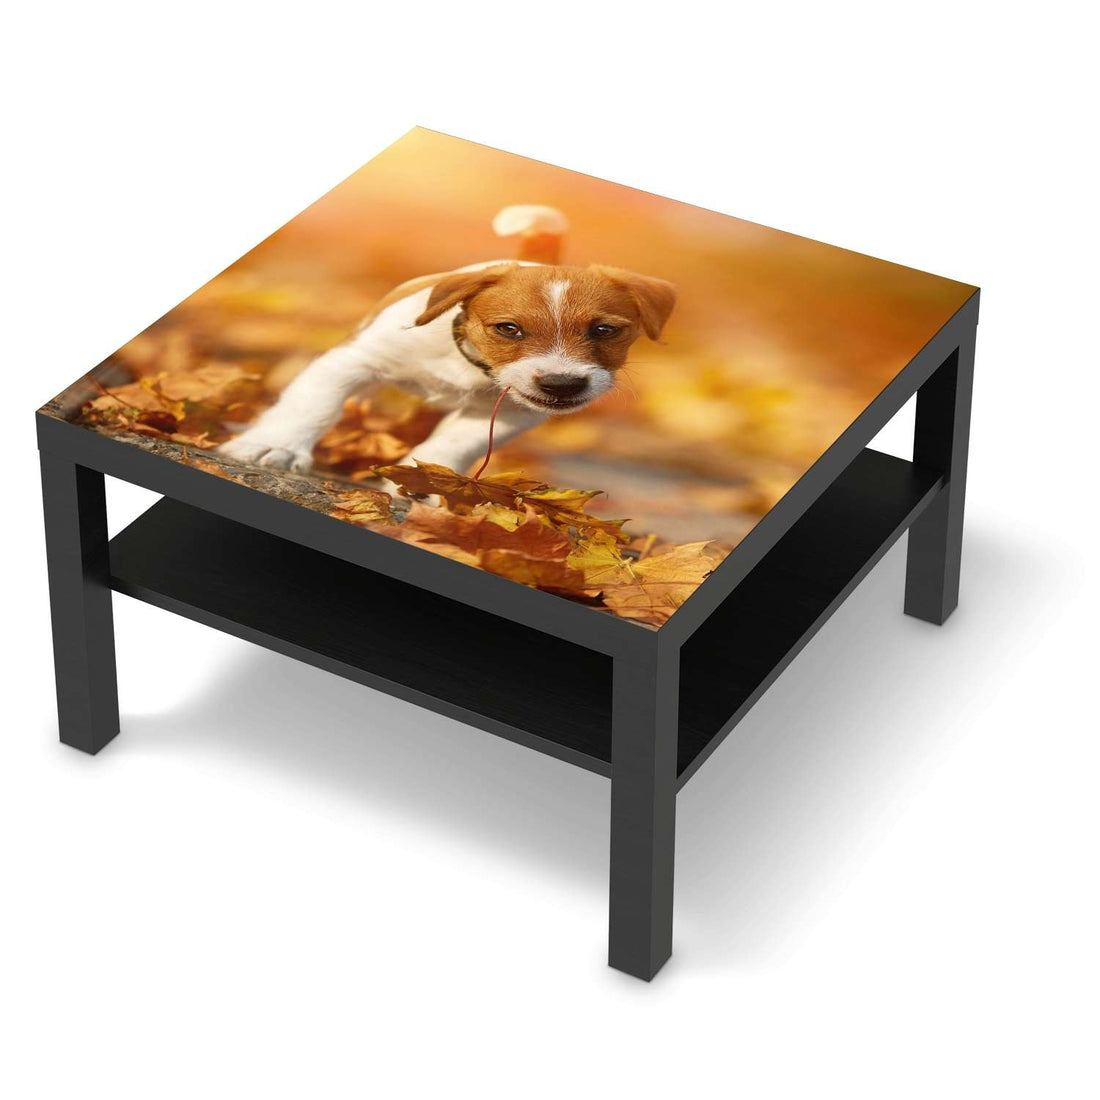 Selbstklebende Folie Jack the Puppy - IKEA Lack Tisch 78x78 cm - schwarz